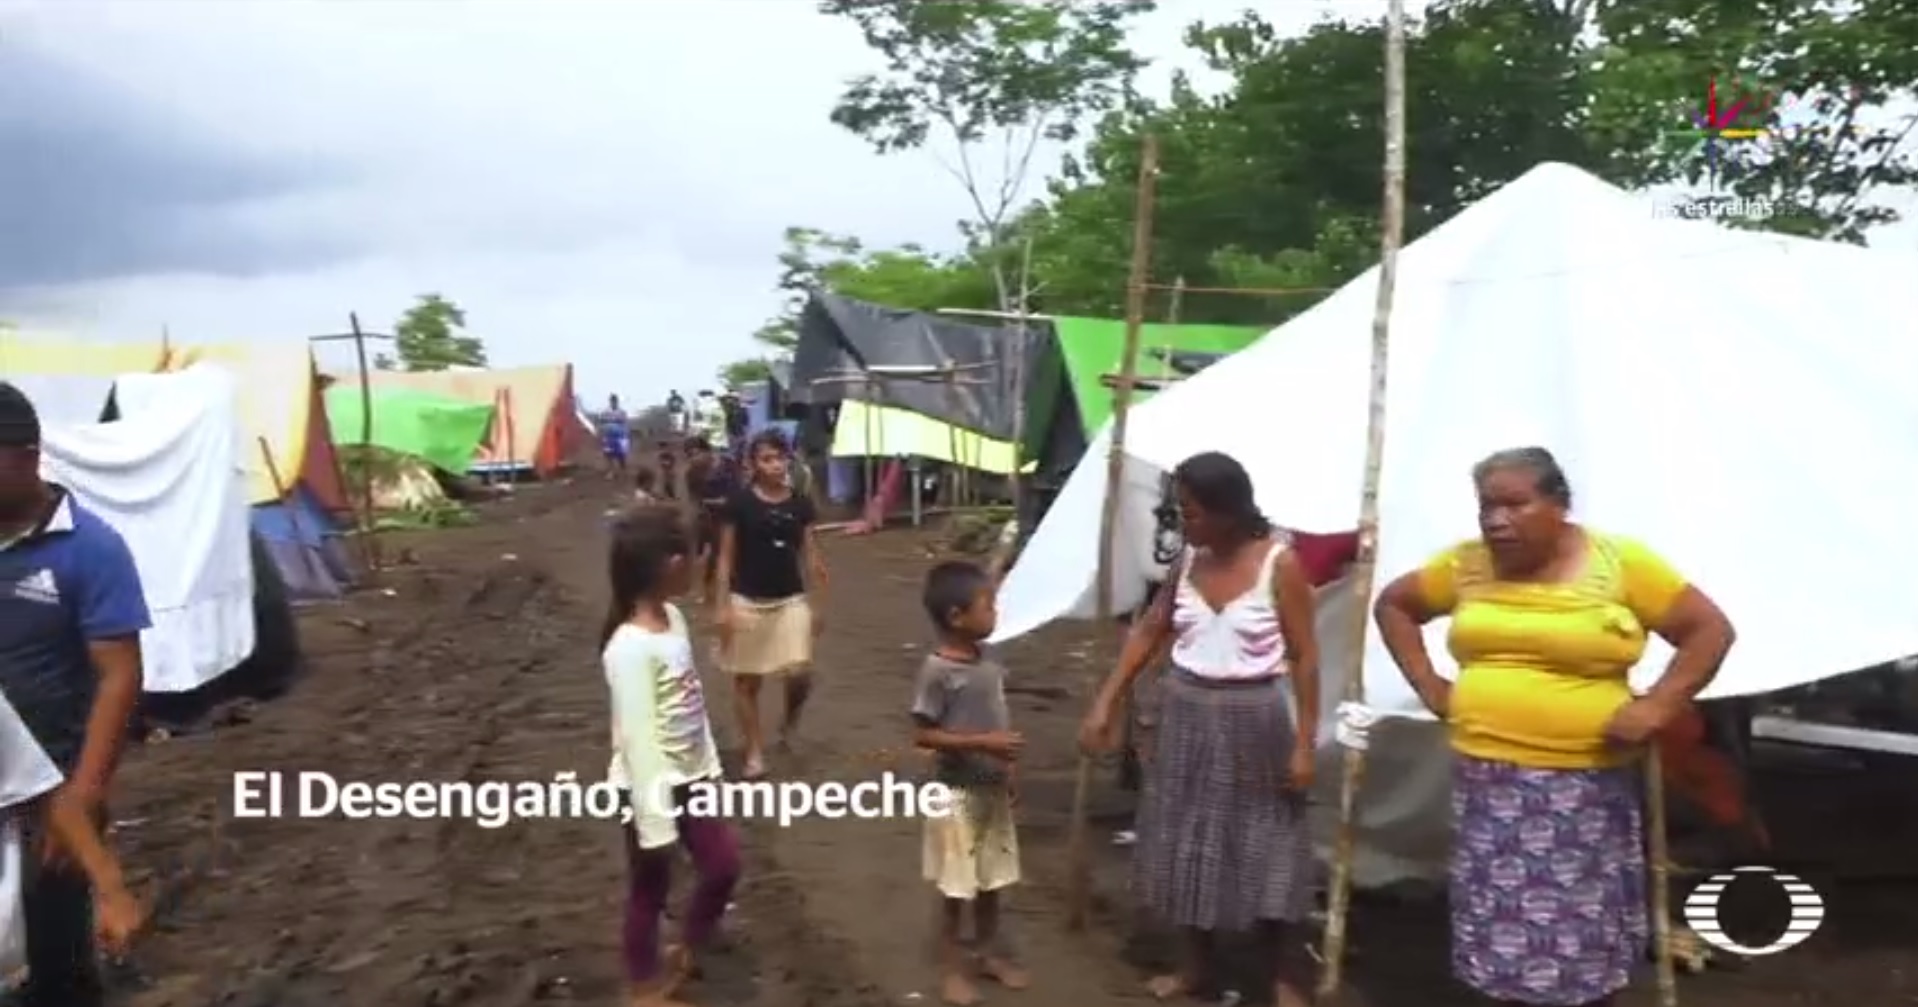 Campamento, desplazados, guatemaltecos, Campeche, enfermedades, infección, salud